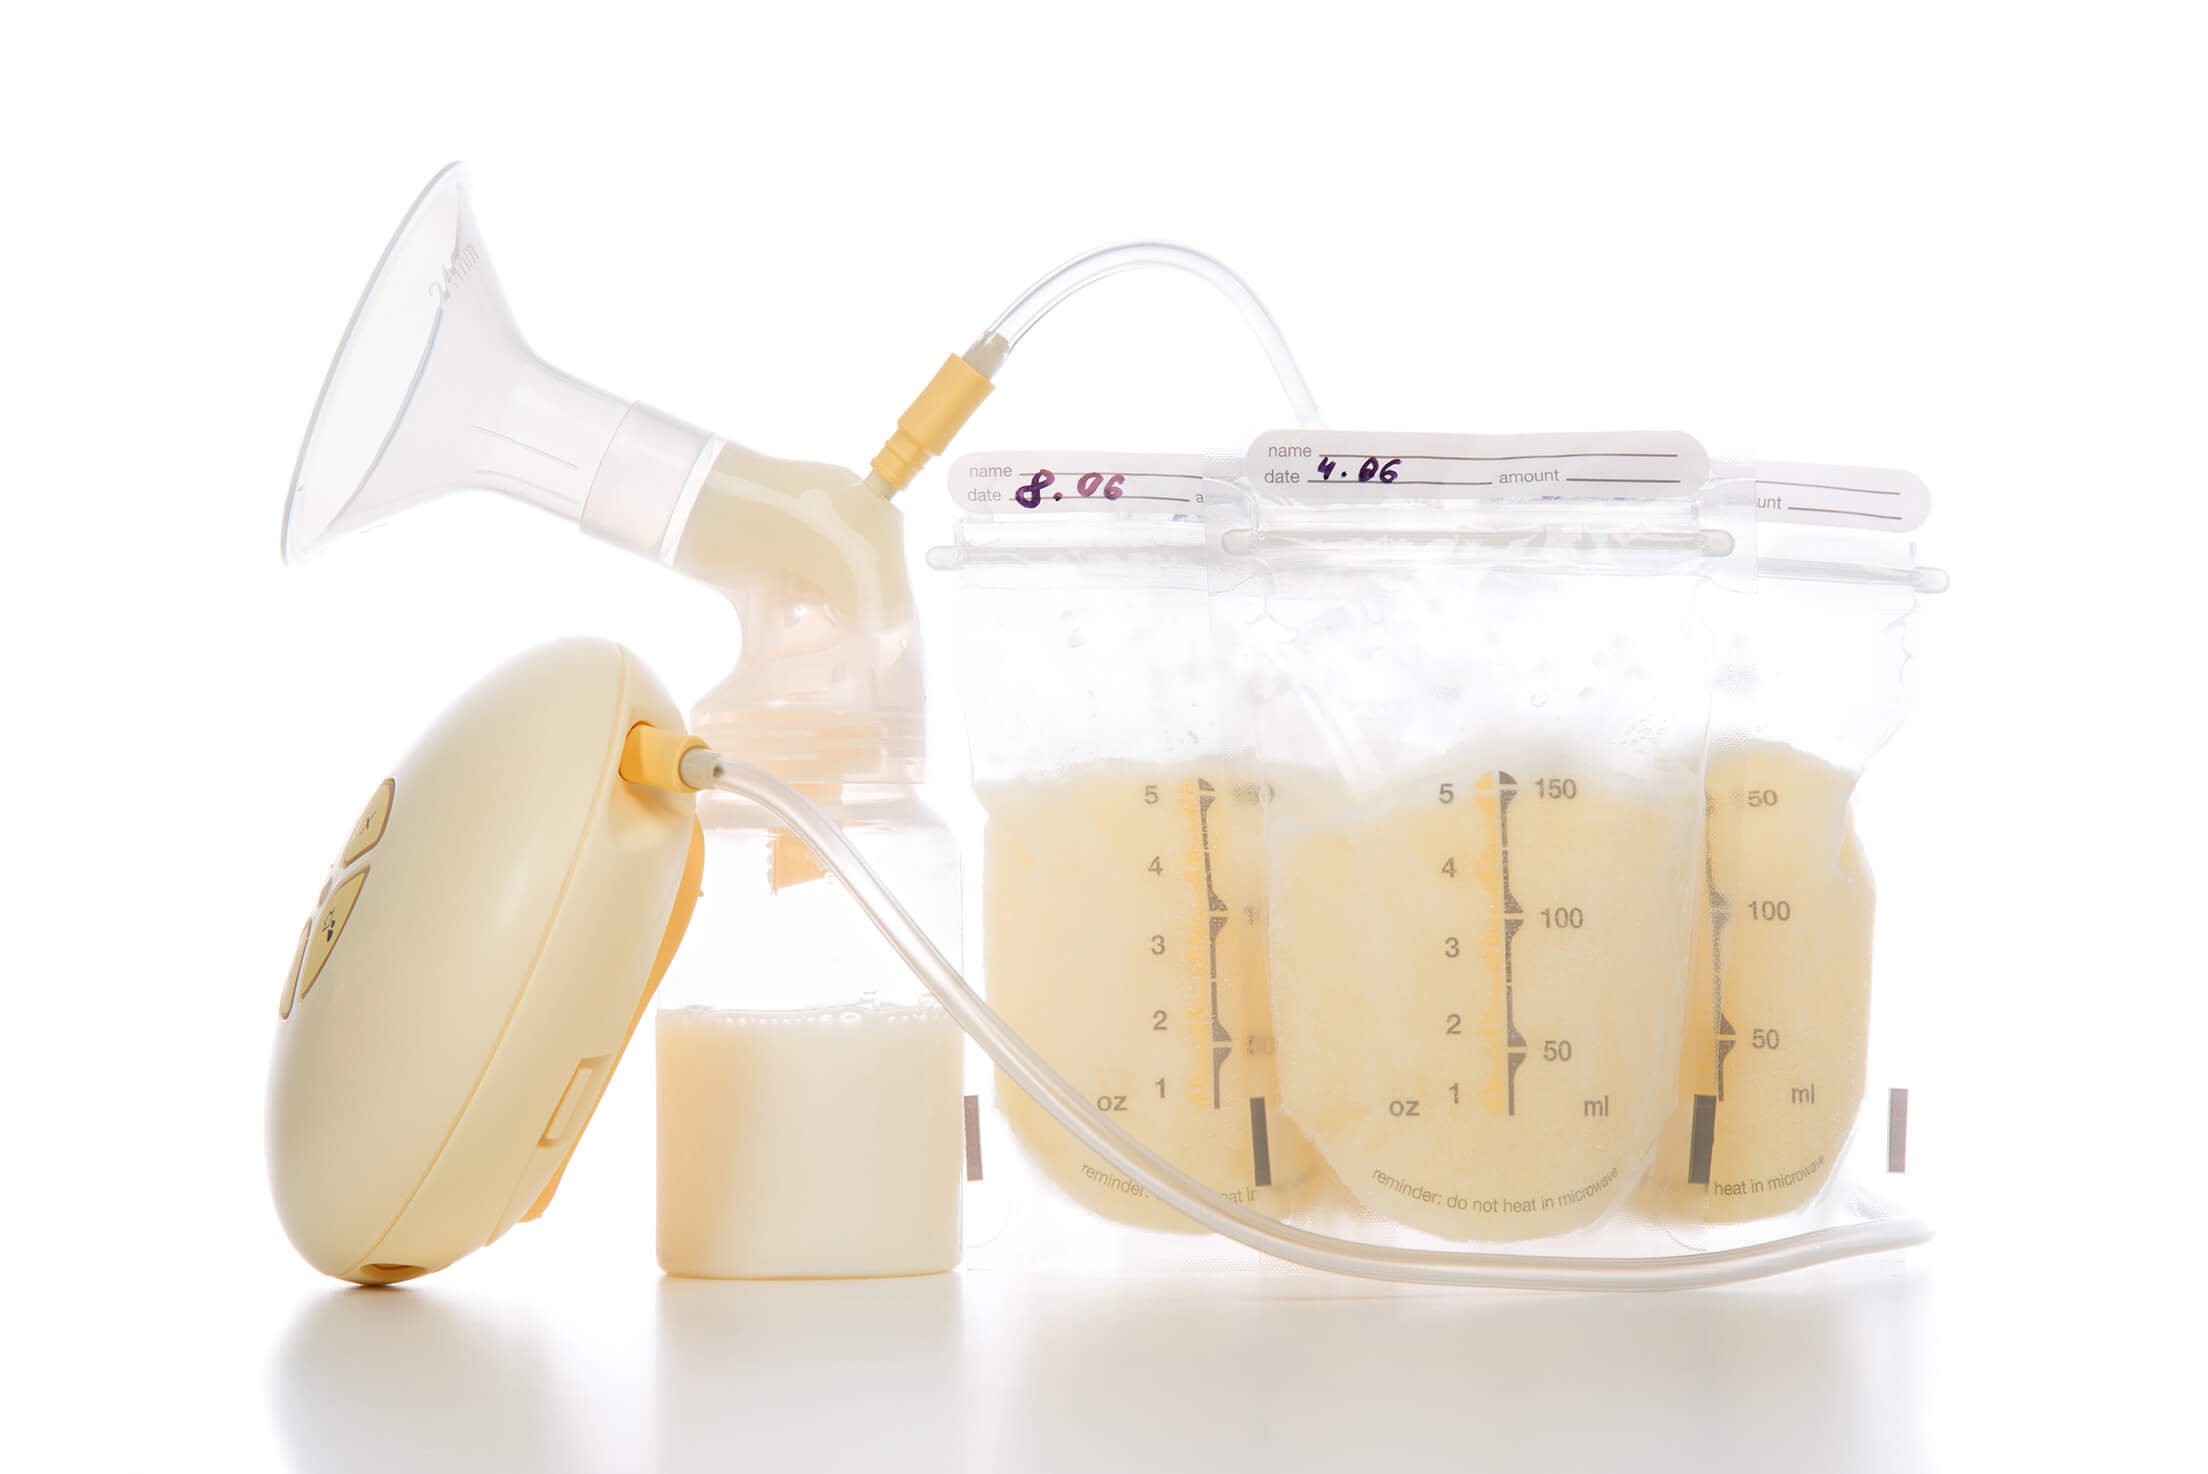 Bolsas para almacenamiento de Leche Materna - Té Para Lactancia Mother's  Milk